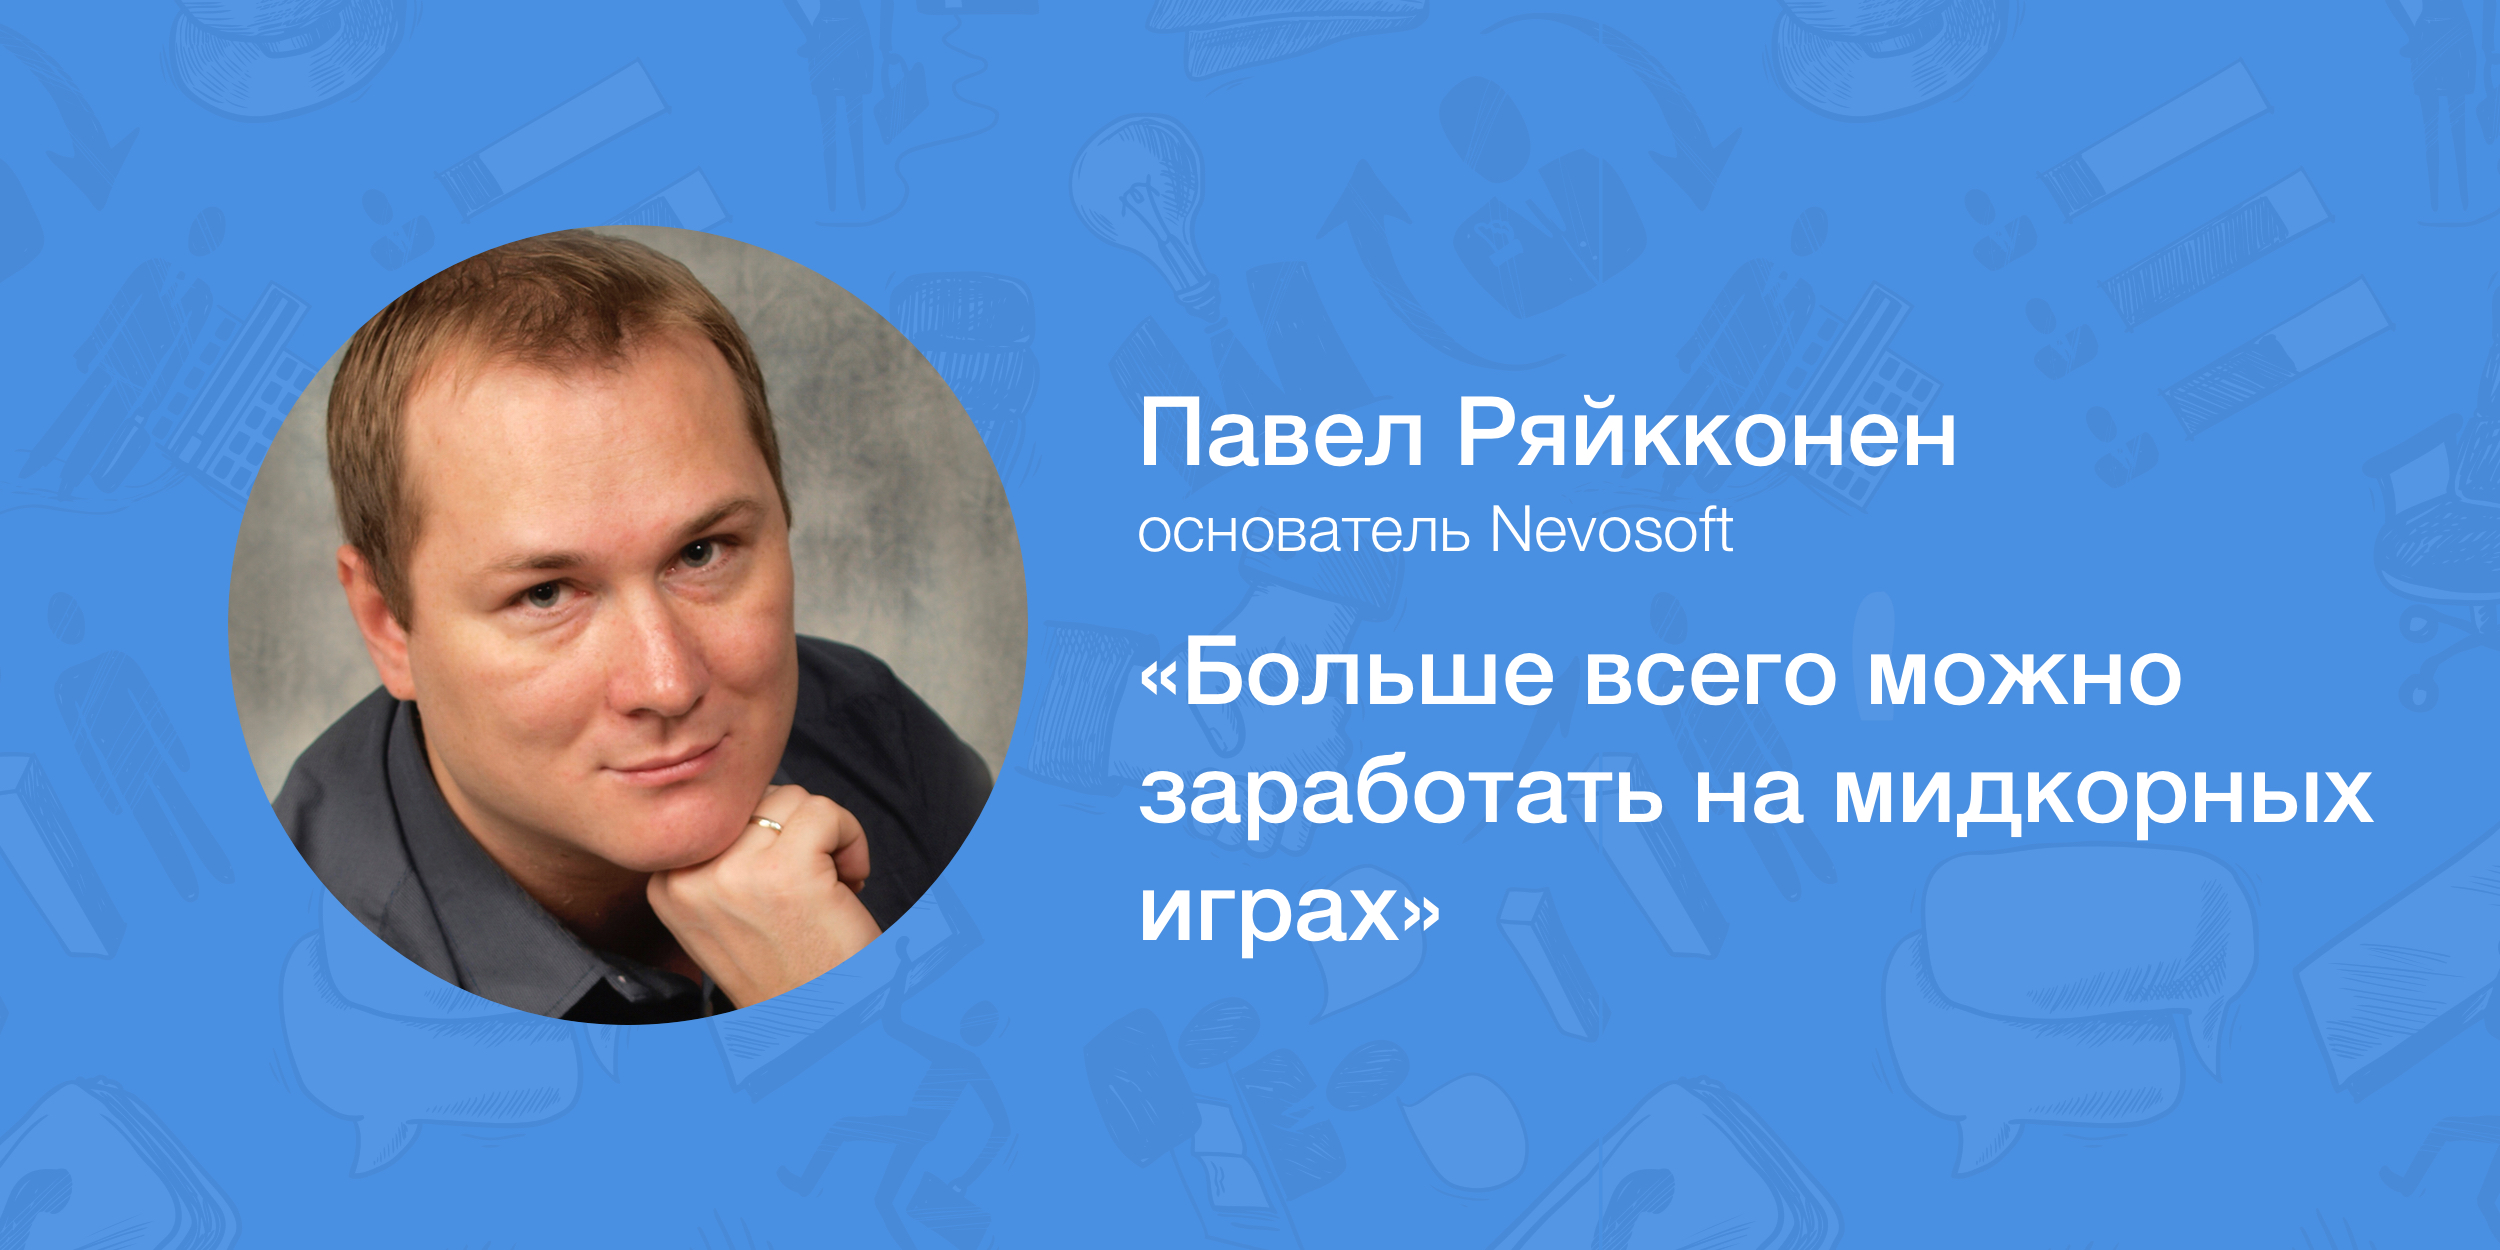 Павел Ряйкконен, Nevosoft: «Больше всего можно заработать на мидкорных играх»